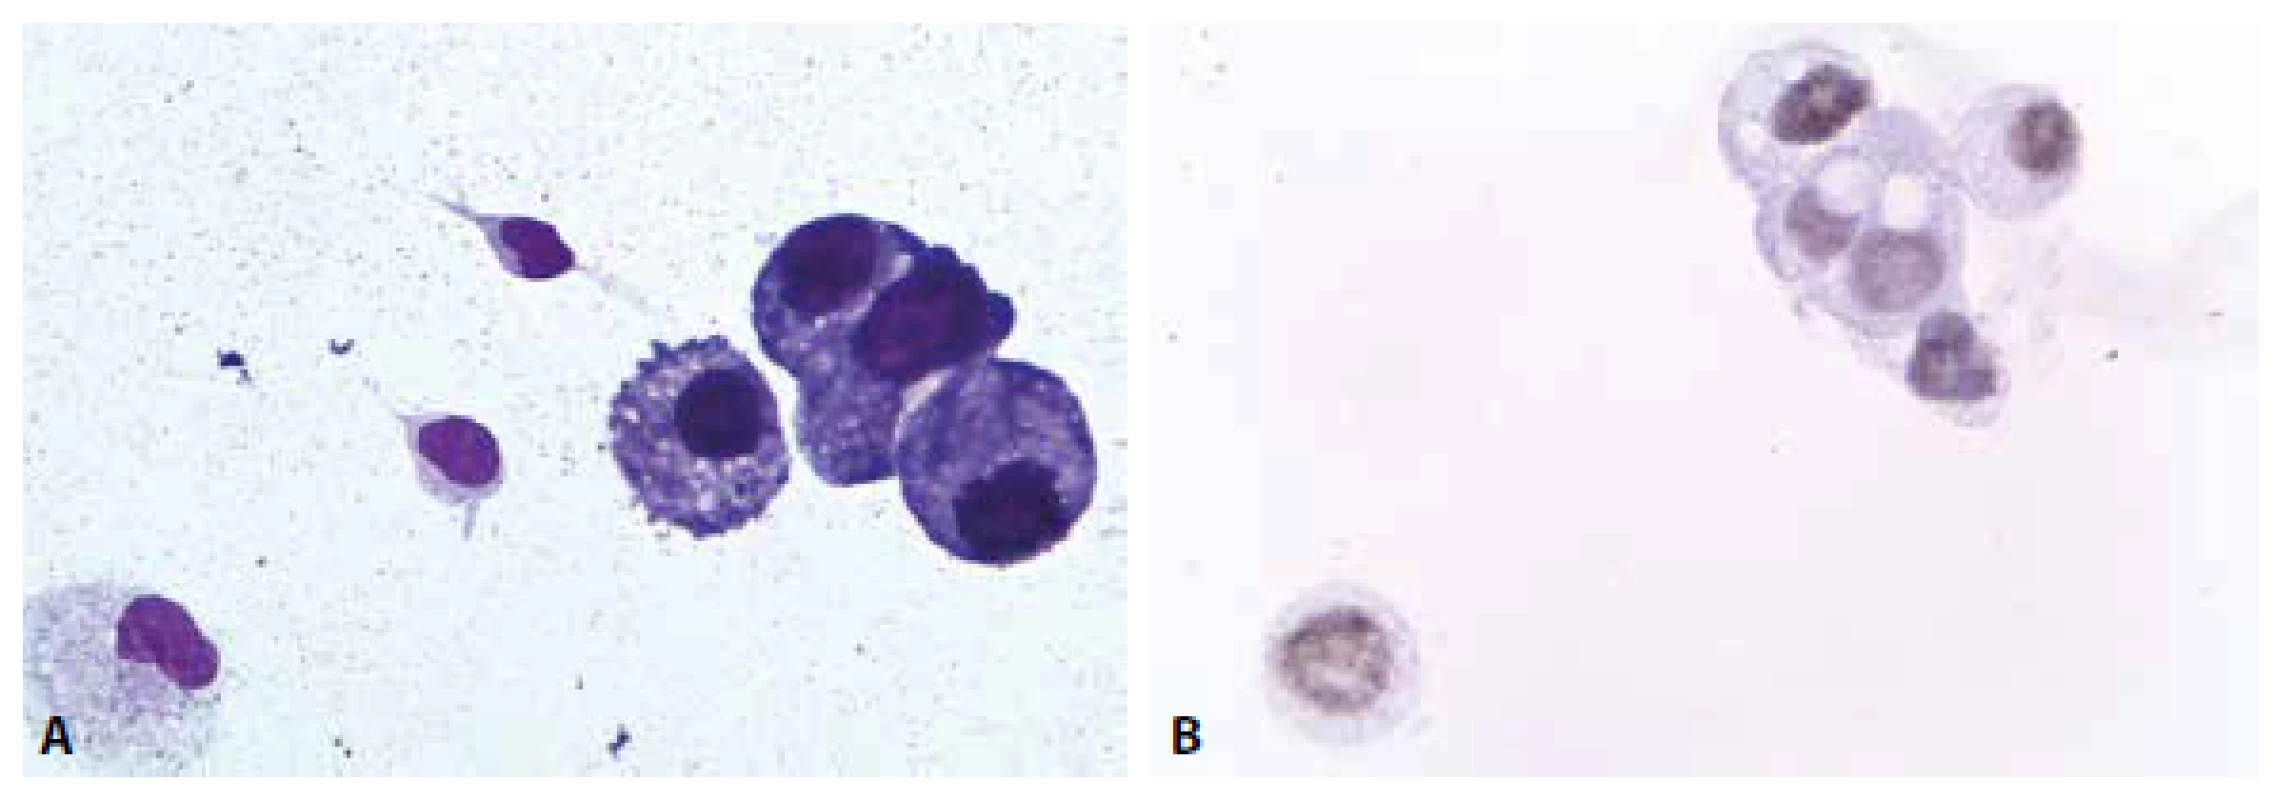 Muž, 73 let anamnéza plicního karcinomu. Zhoršení stavu, febrilie, k vyloučení zánětu. (A) Mírná suspektně nádorová pleocytóza
v barvení MGG. Atypické buňky jednotlivě i v kohezivních skupinkách. 600x. (B) Jaderná pozitivita TTF1 v nádorových buňkách. 600x.